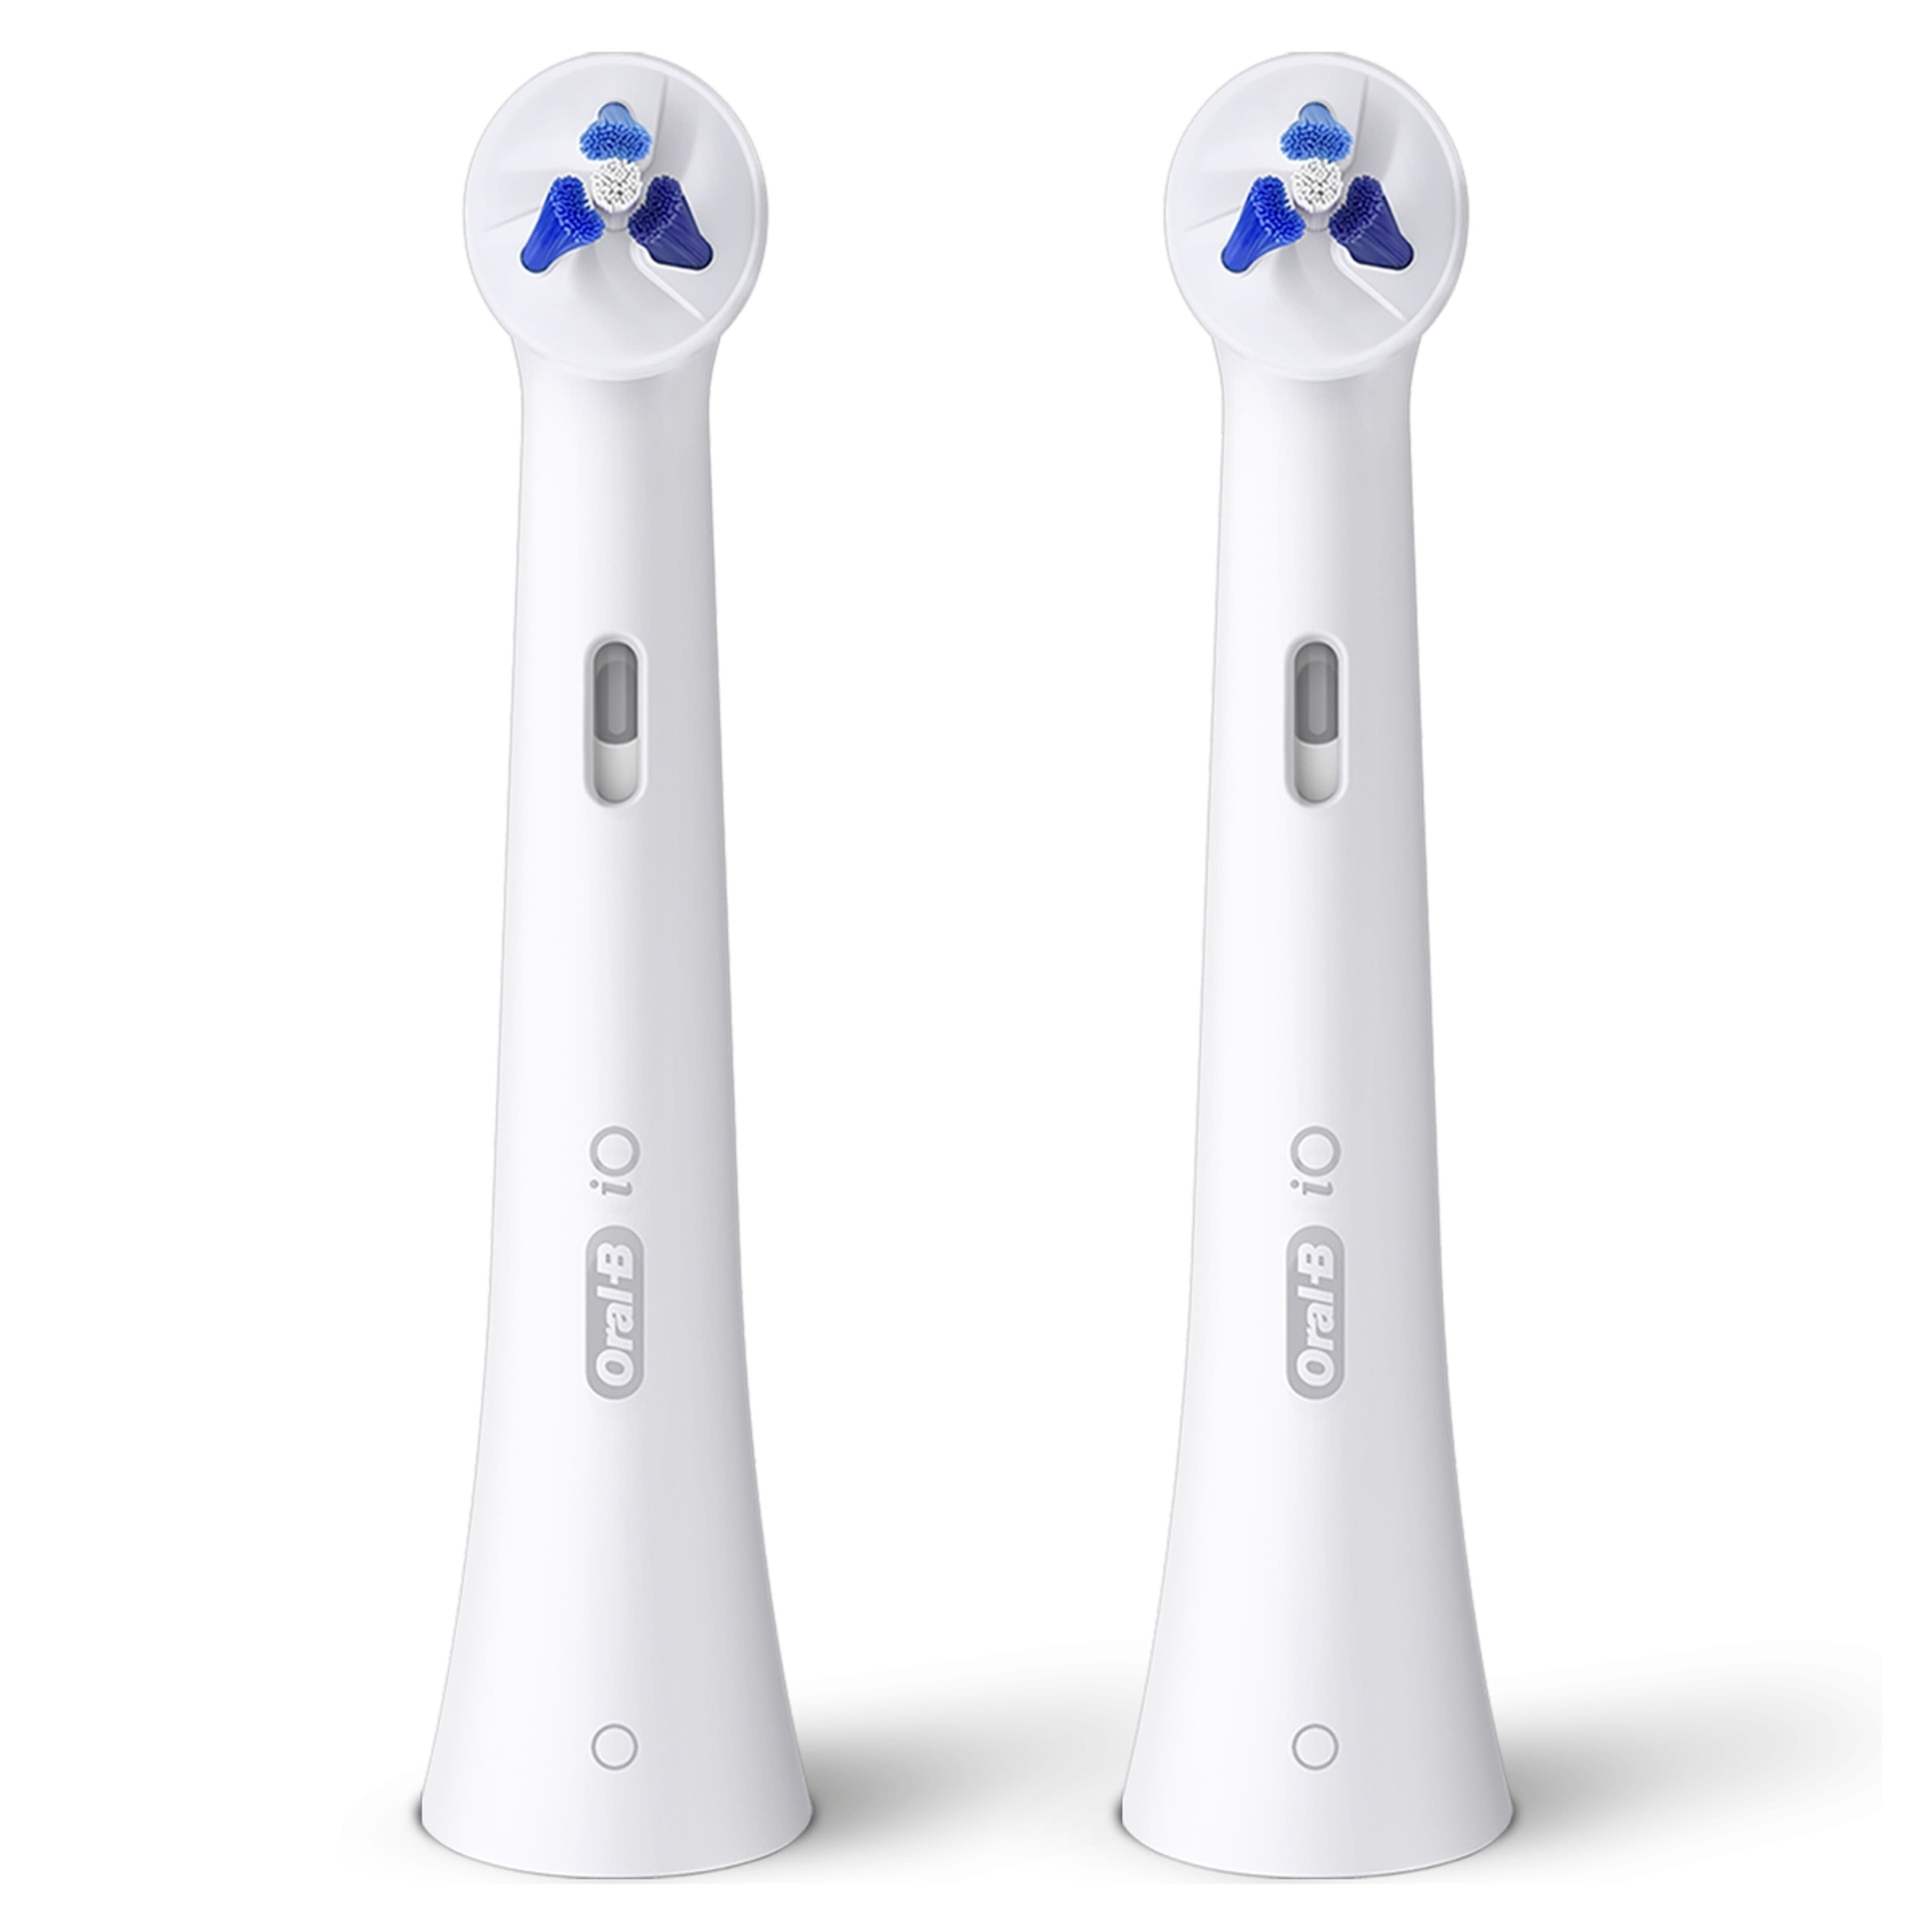 Oral-B iO Specialised Clean fogkefefej - 2 db-9